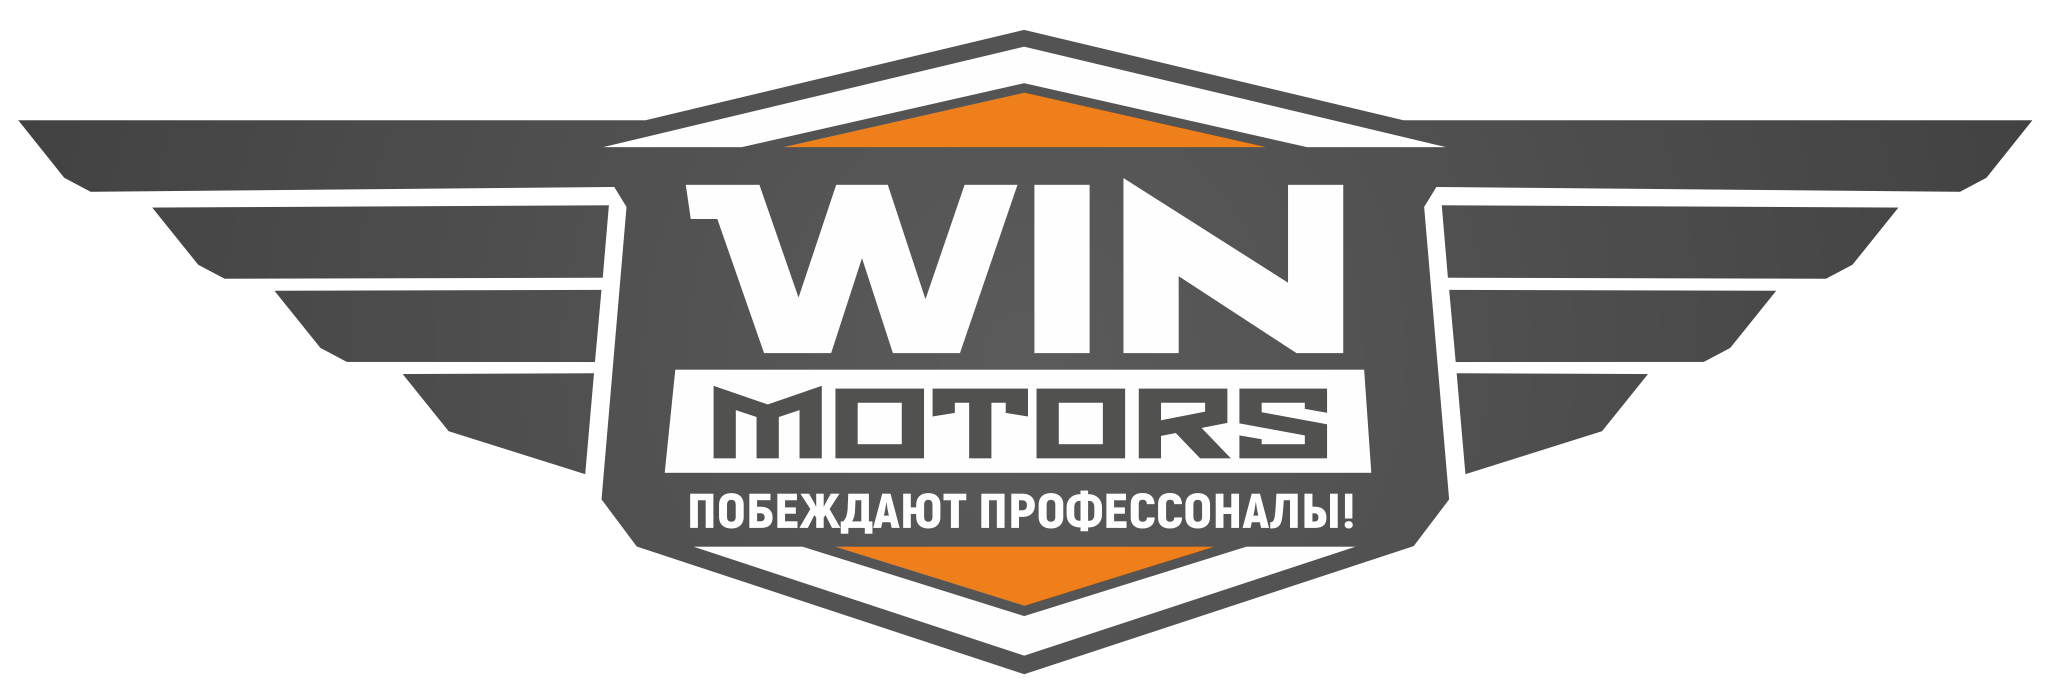 Вин Моторс. Логотип мувинговой компании. Vin motors